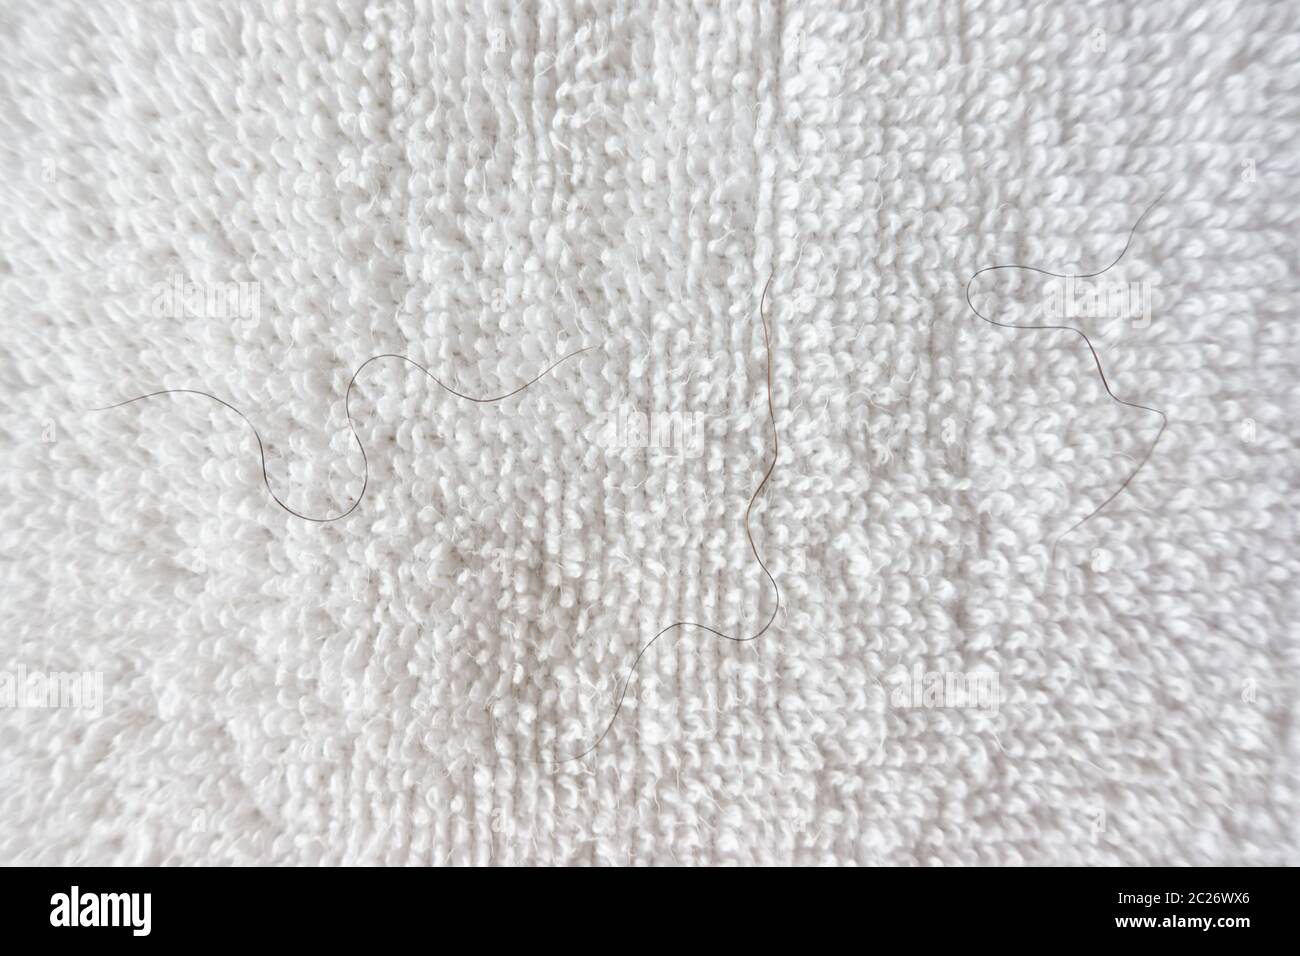 Chute de poils pubiens sur serviette blanche Photo Stock - Alamy